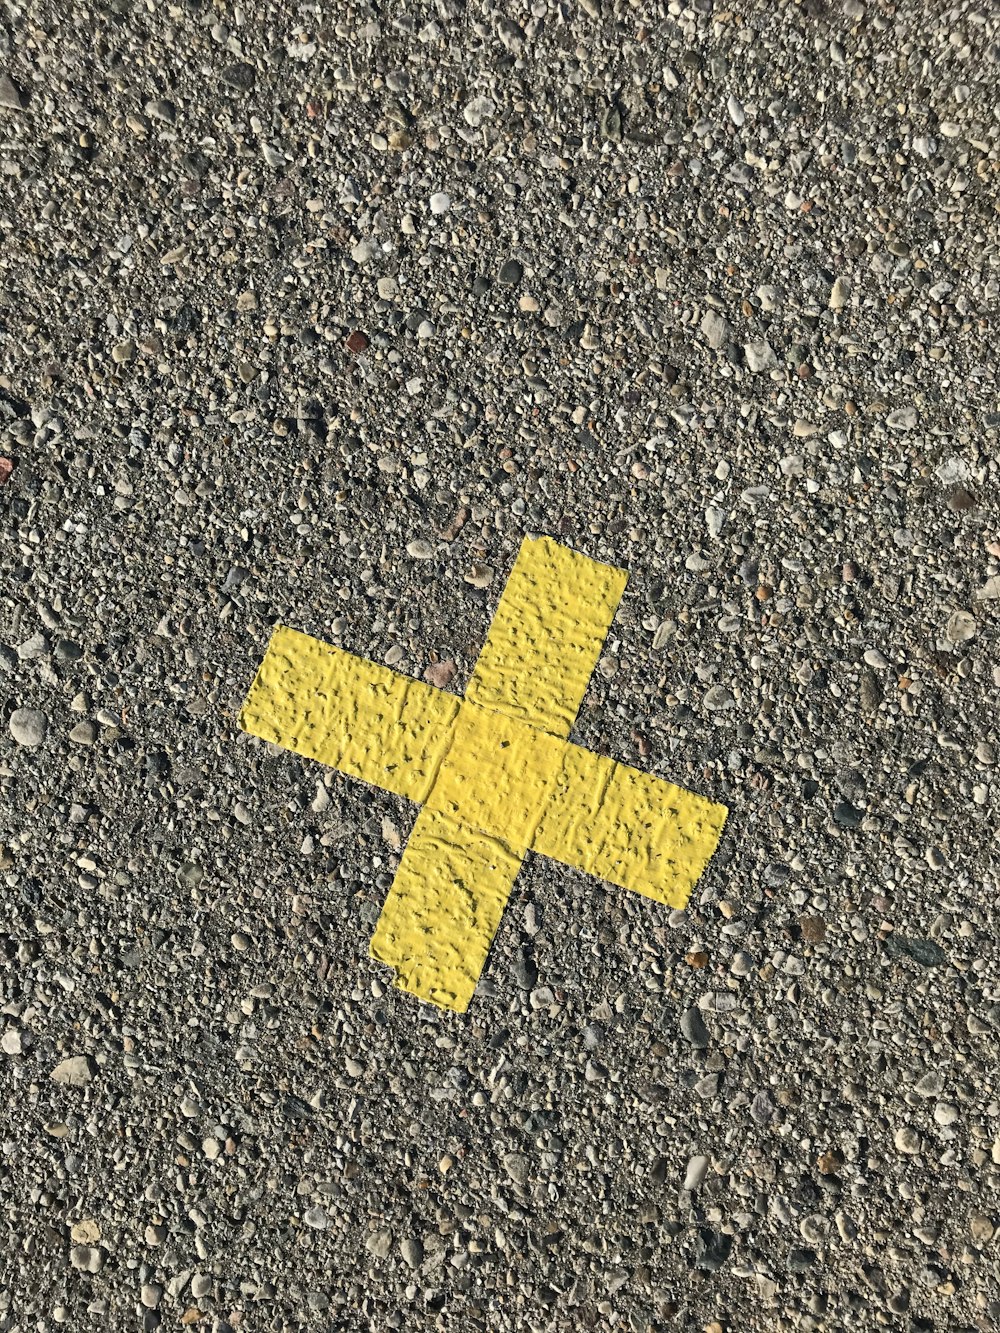 灰色のコンクリートの床に黄色の矢印記号